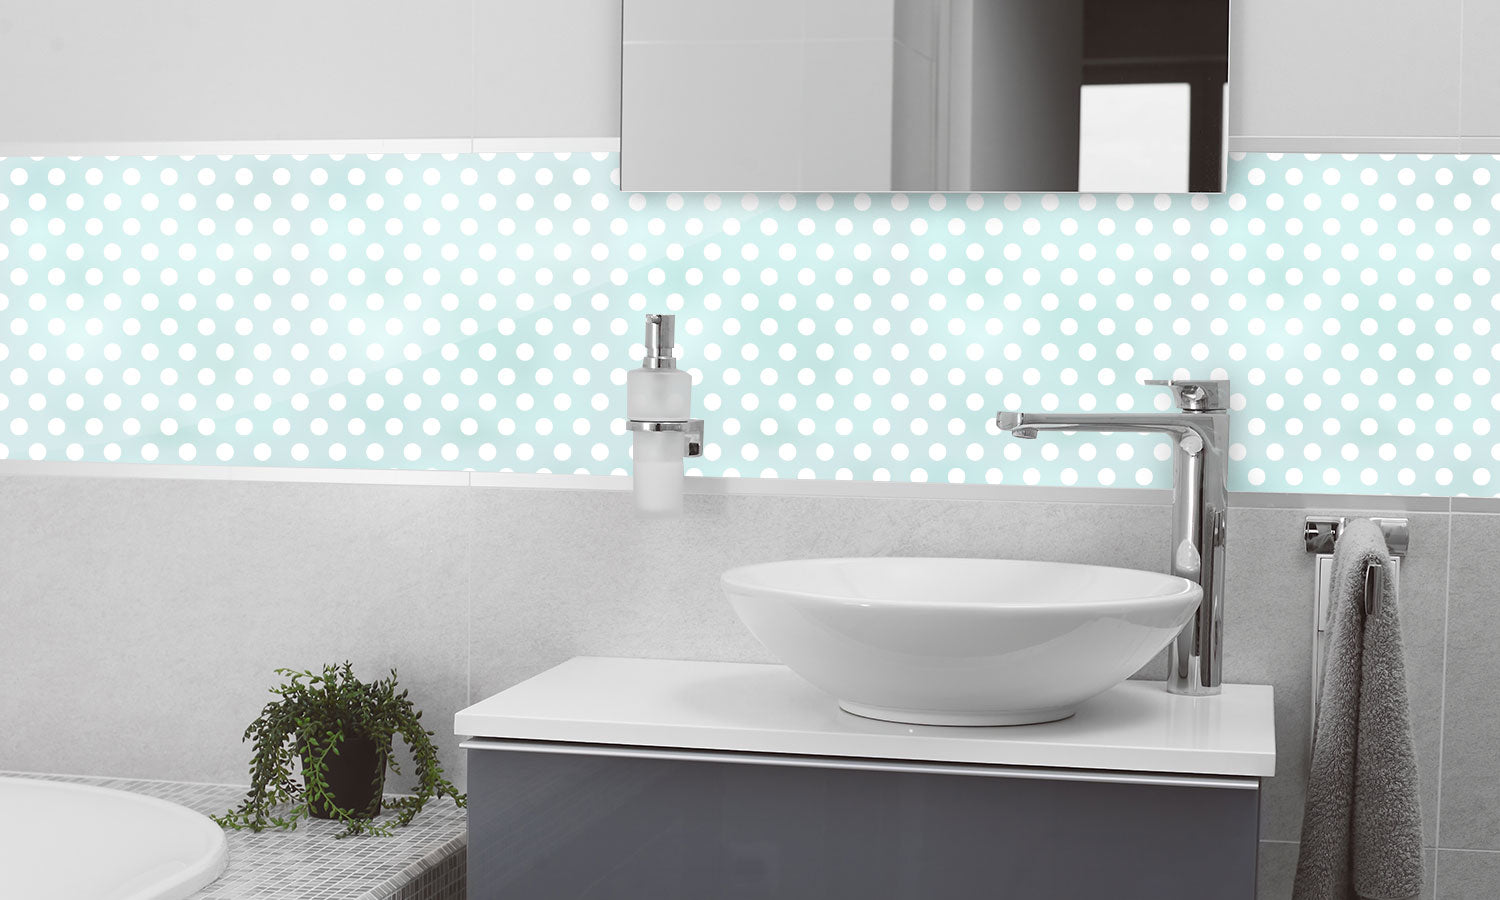 Kuhinjski paneli Seamless polka dots - Pleksi steklo - s tiskom za kuhinjo, Stenske obloge PKU0356